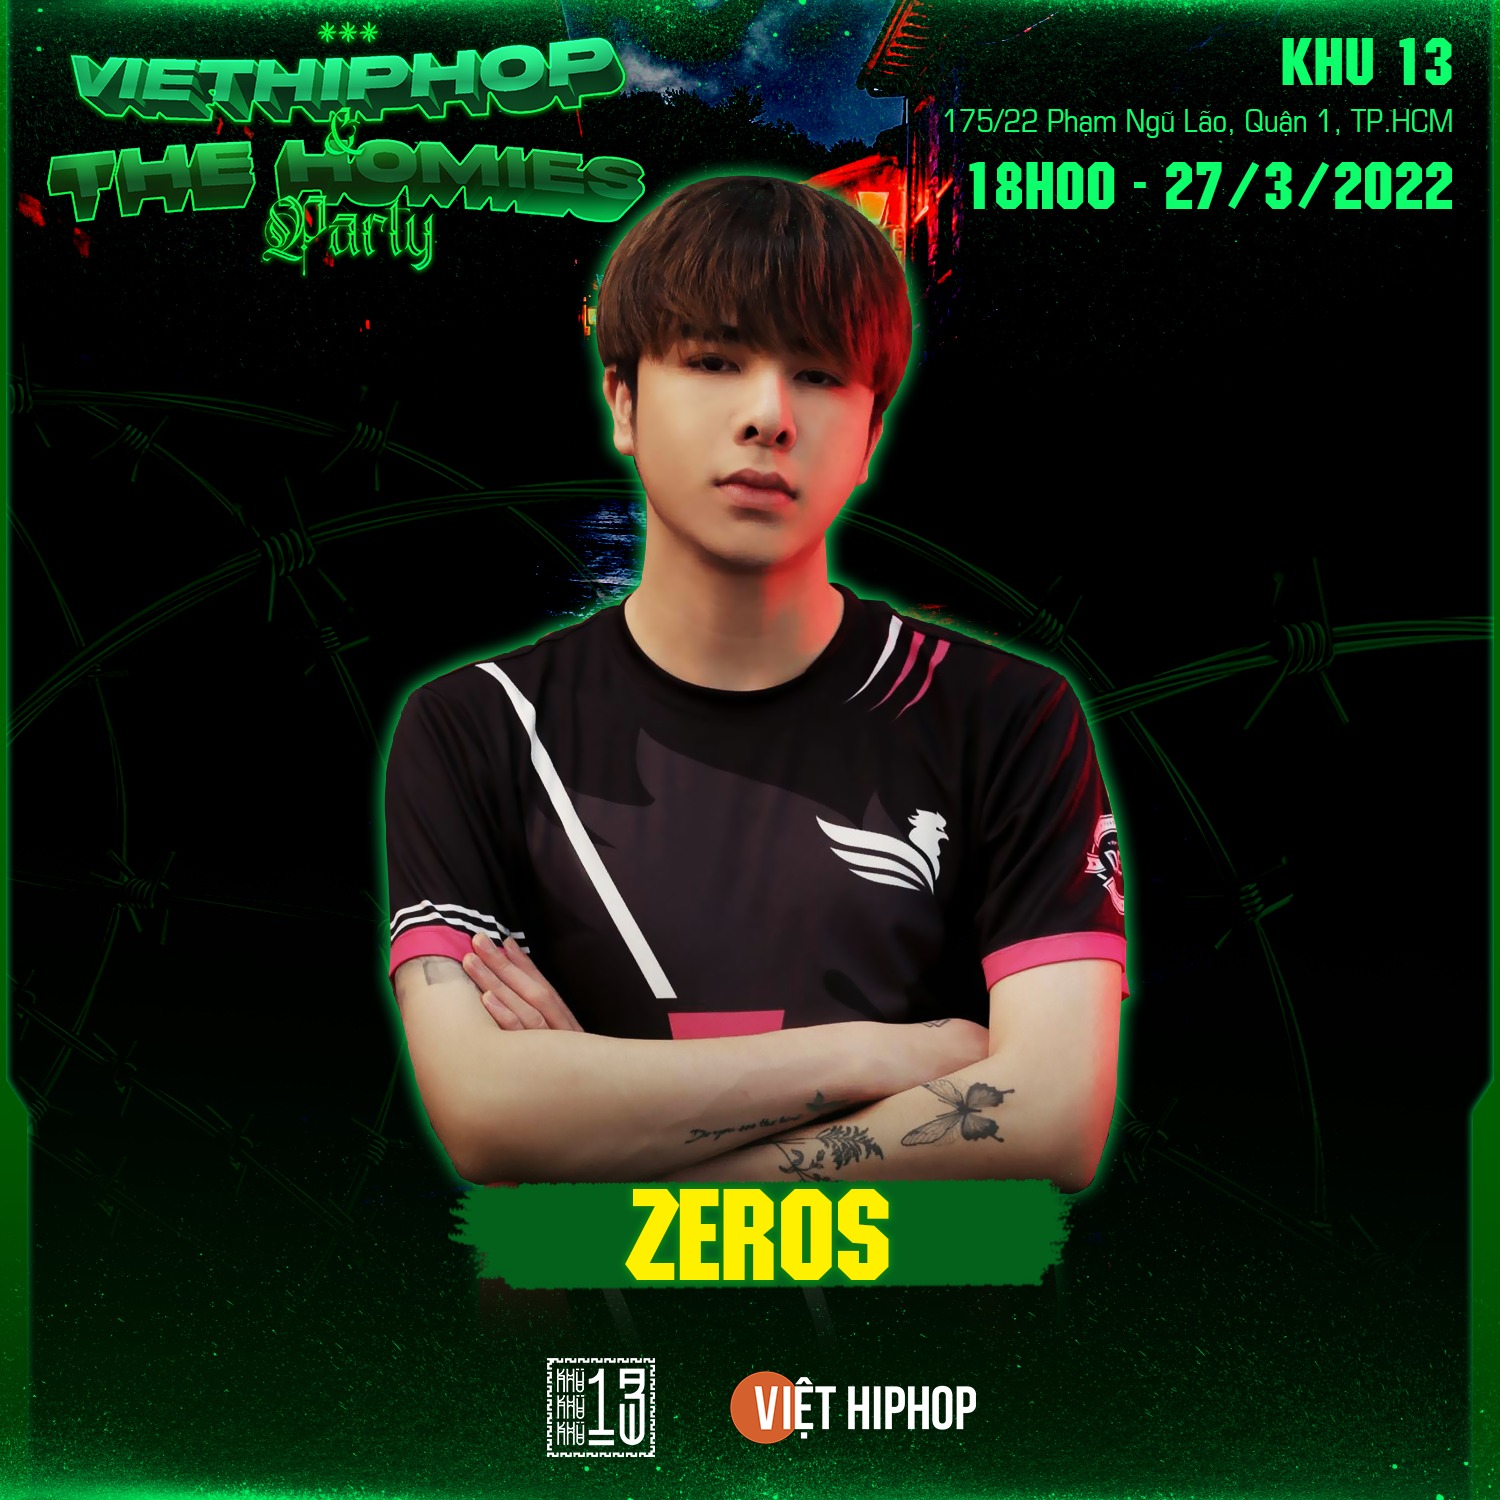 Zeros sẽ có màn debut vai trò Rapper trước khán giả vào ngày 27/3 tới